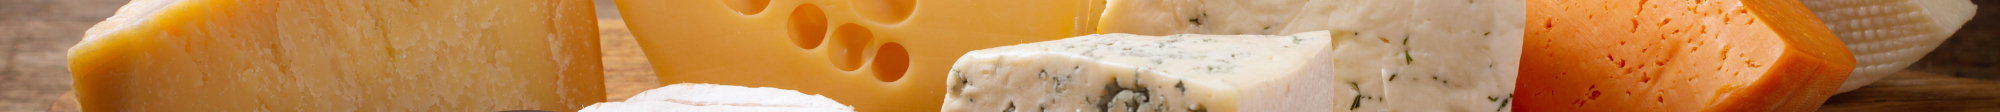 Comprar queso mezcla online gourmet | Mixtura Gourmet